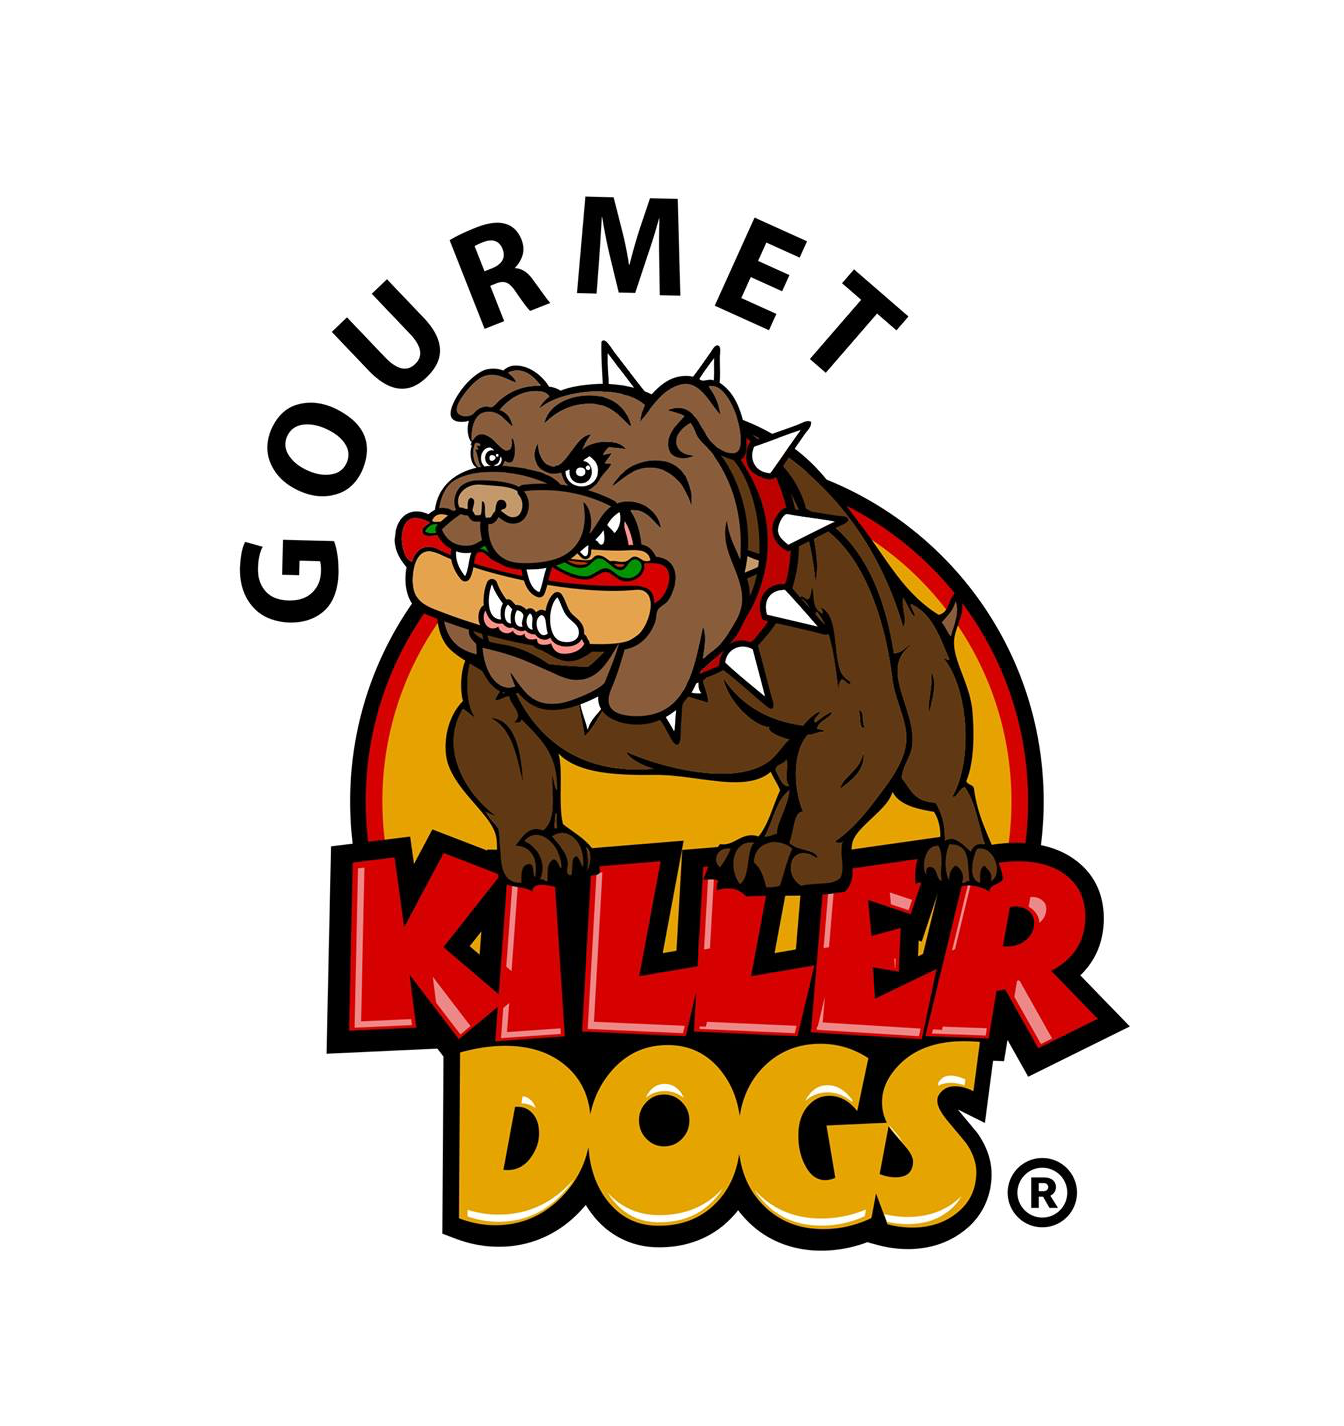 Gourmet Killer Dogs logo